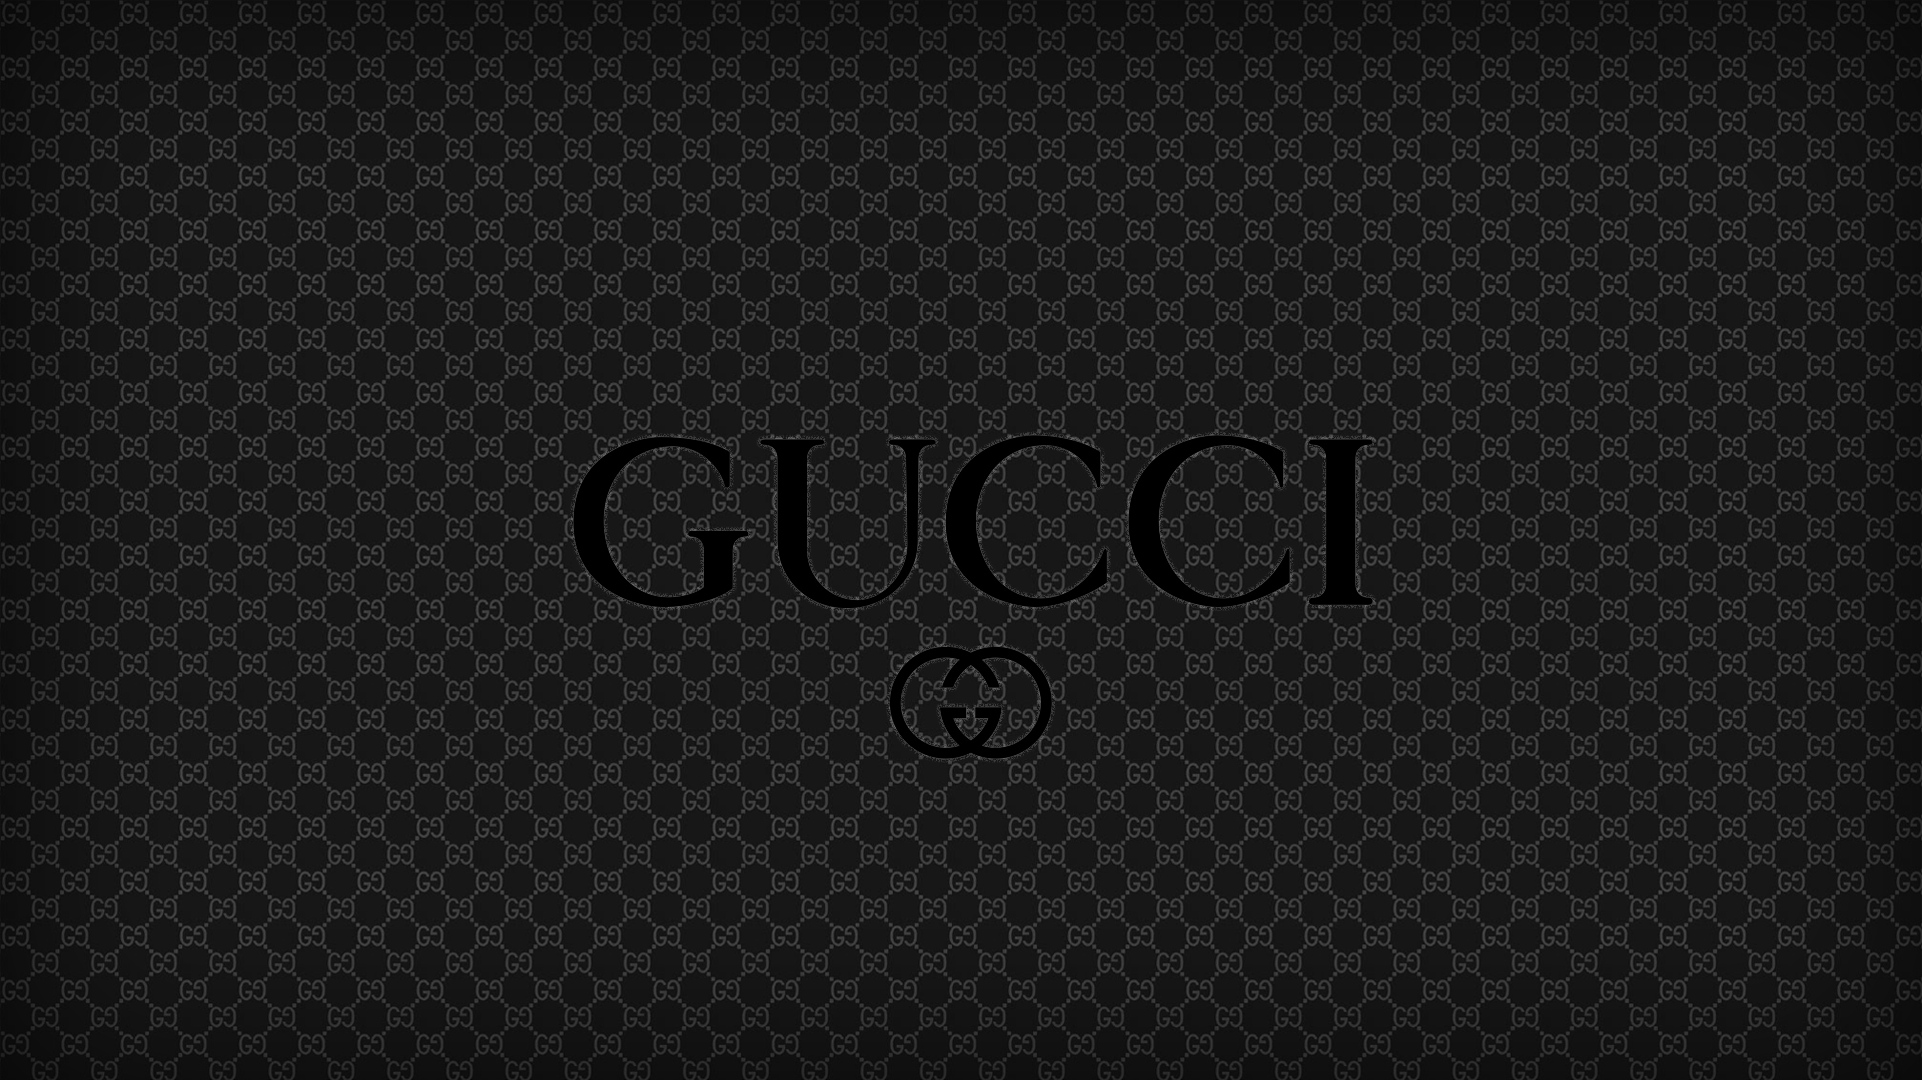 Hình nền 1922x1080 Gucci.  Black_Gucci_Wallpaper_2_by_chuckdobaba.png.  BOUT